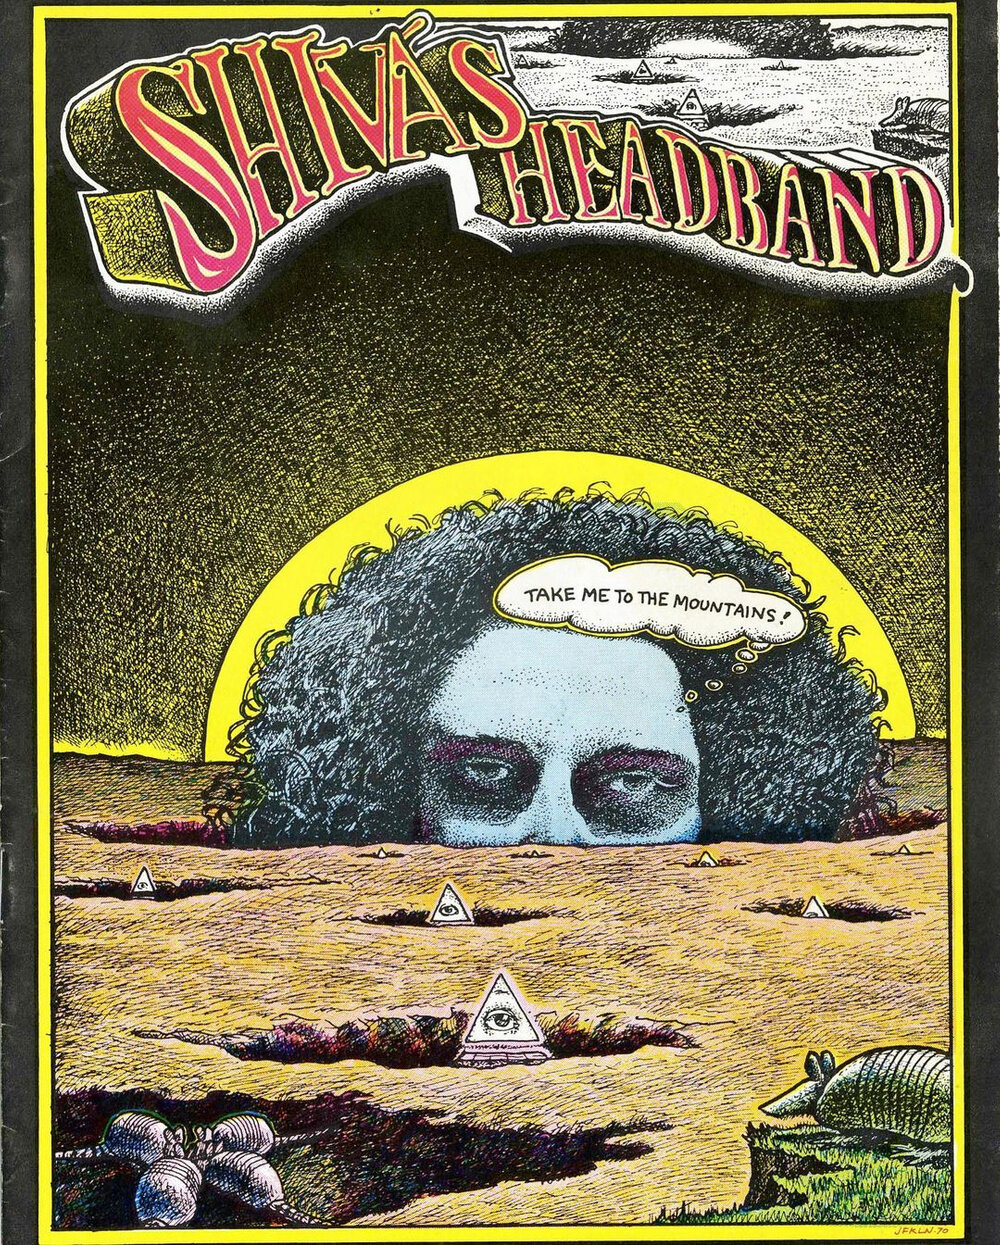 Shiva’s Headband, 1970